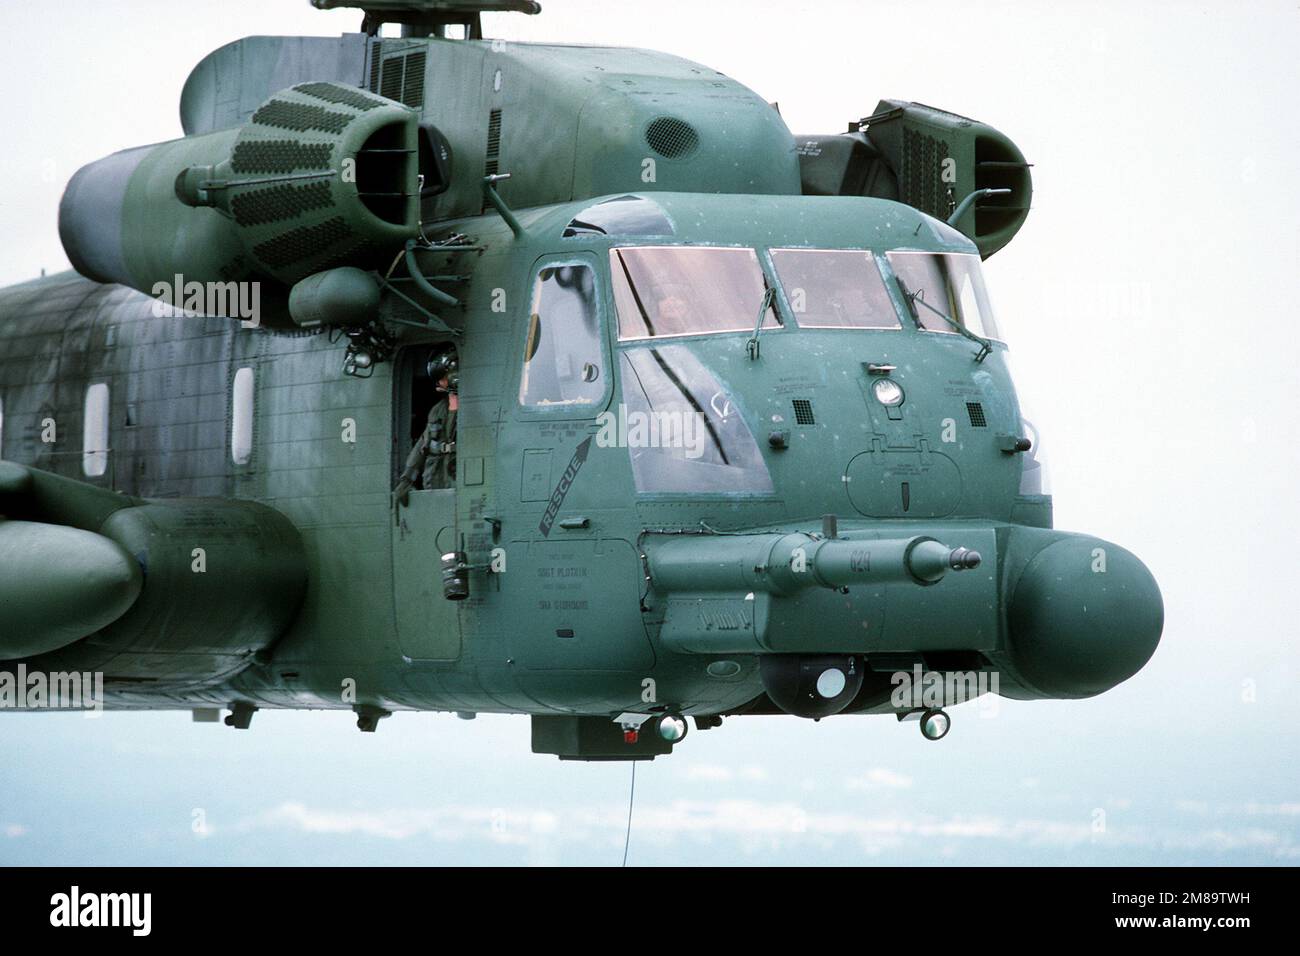 Vue en gros plan avant droite d'un hélicoptère MH-53H de l'escadron des opérations spéciales 20th. Pays : inconnu Banque D'Images